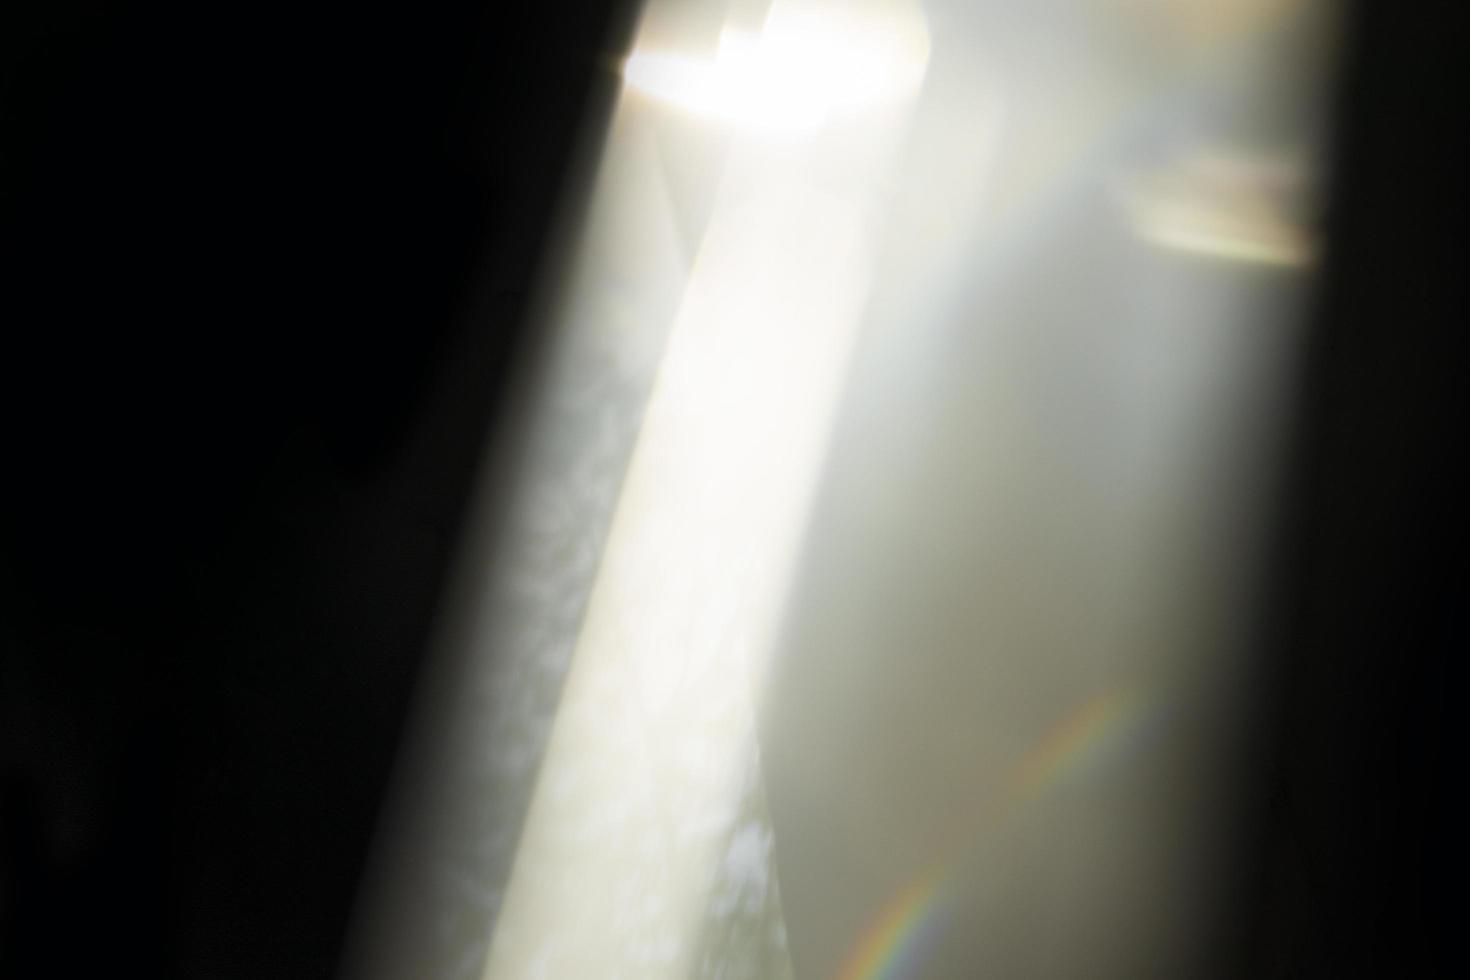 effetto di perdita di luce cristallina per la sovrapposizione di foto. prisma lens flare bokeh astratto con bagliore, luci colorate e magiche su sfondo nero. foto